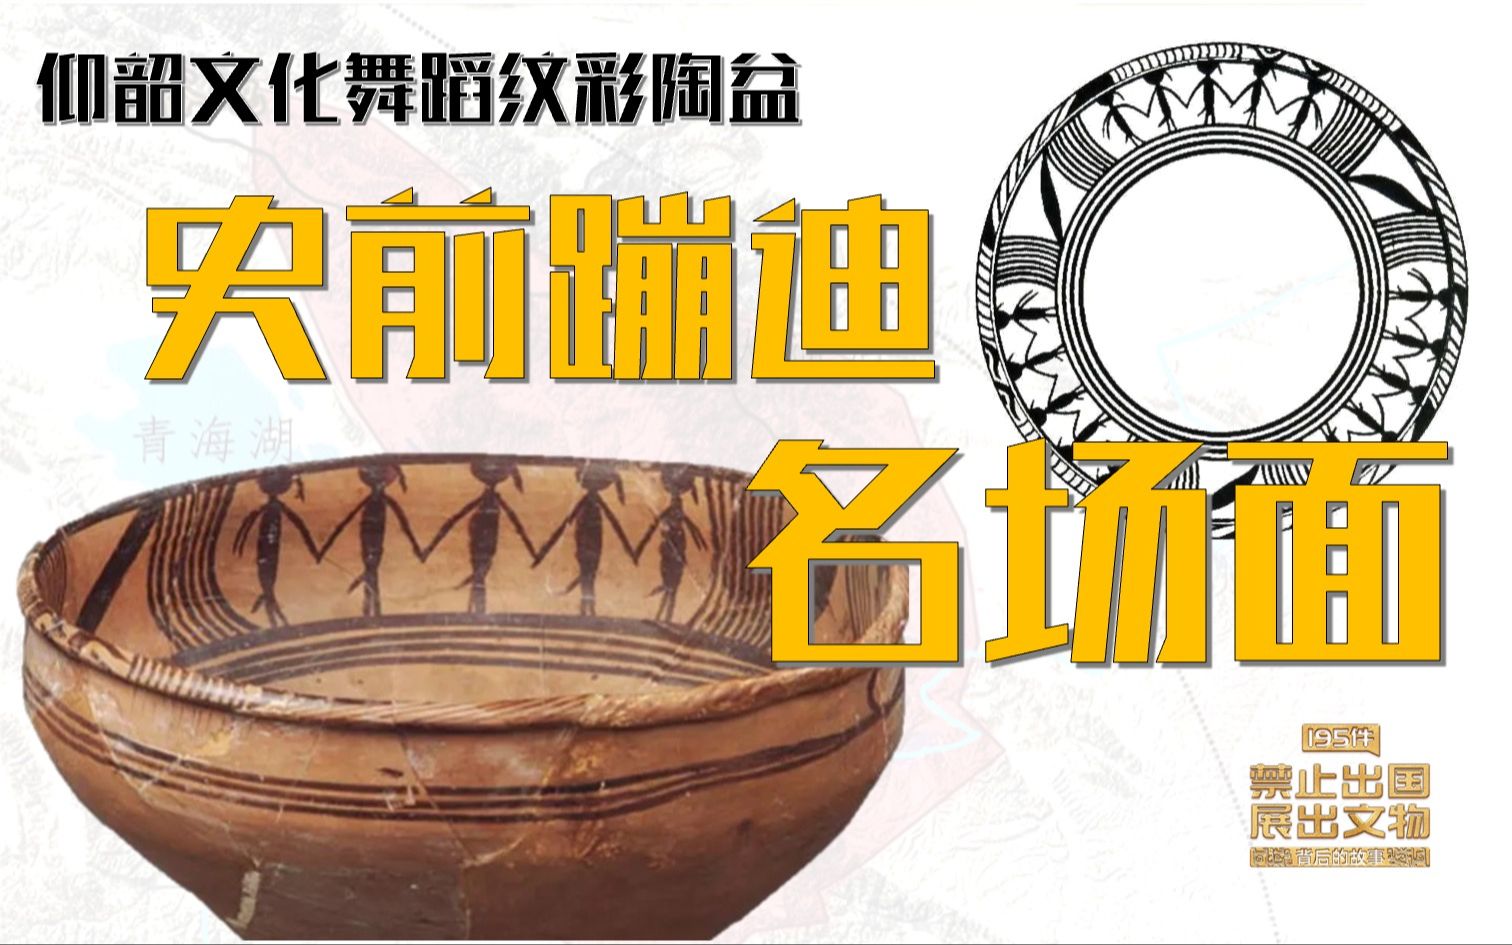 第16件:仰韶文化舞蹈纹彩陶盆-195件禁止出国展出文物背后的故事